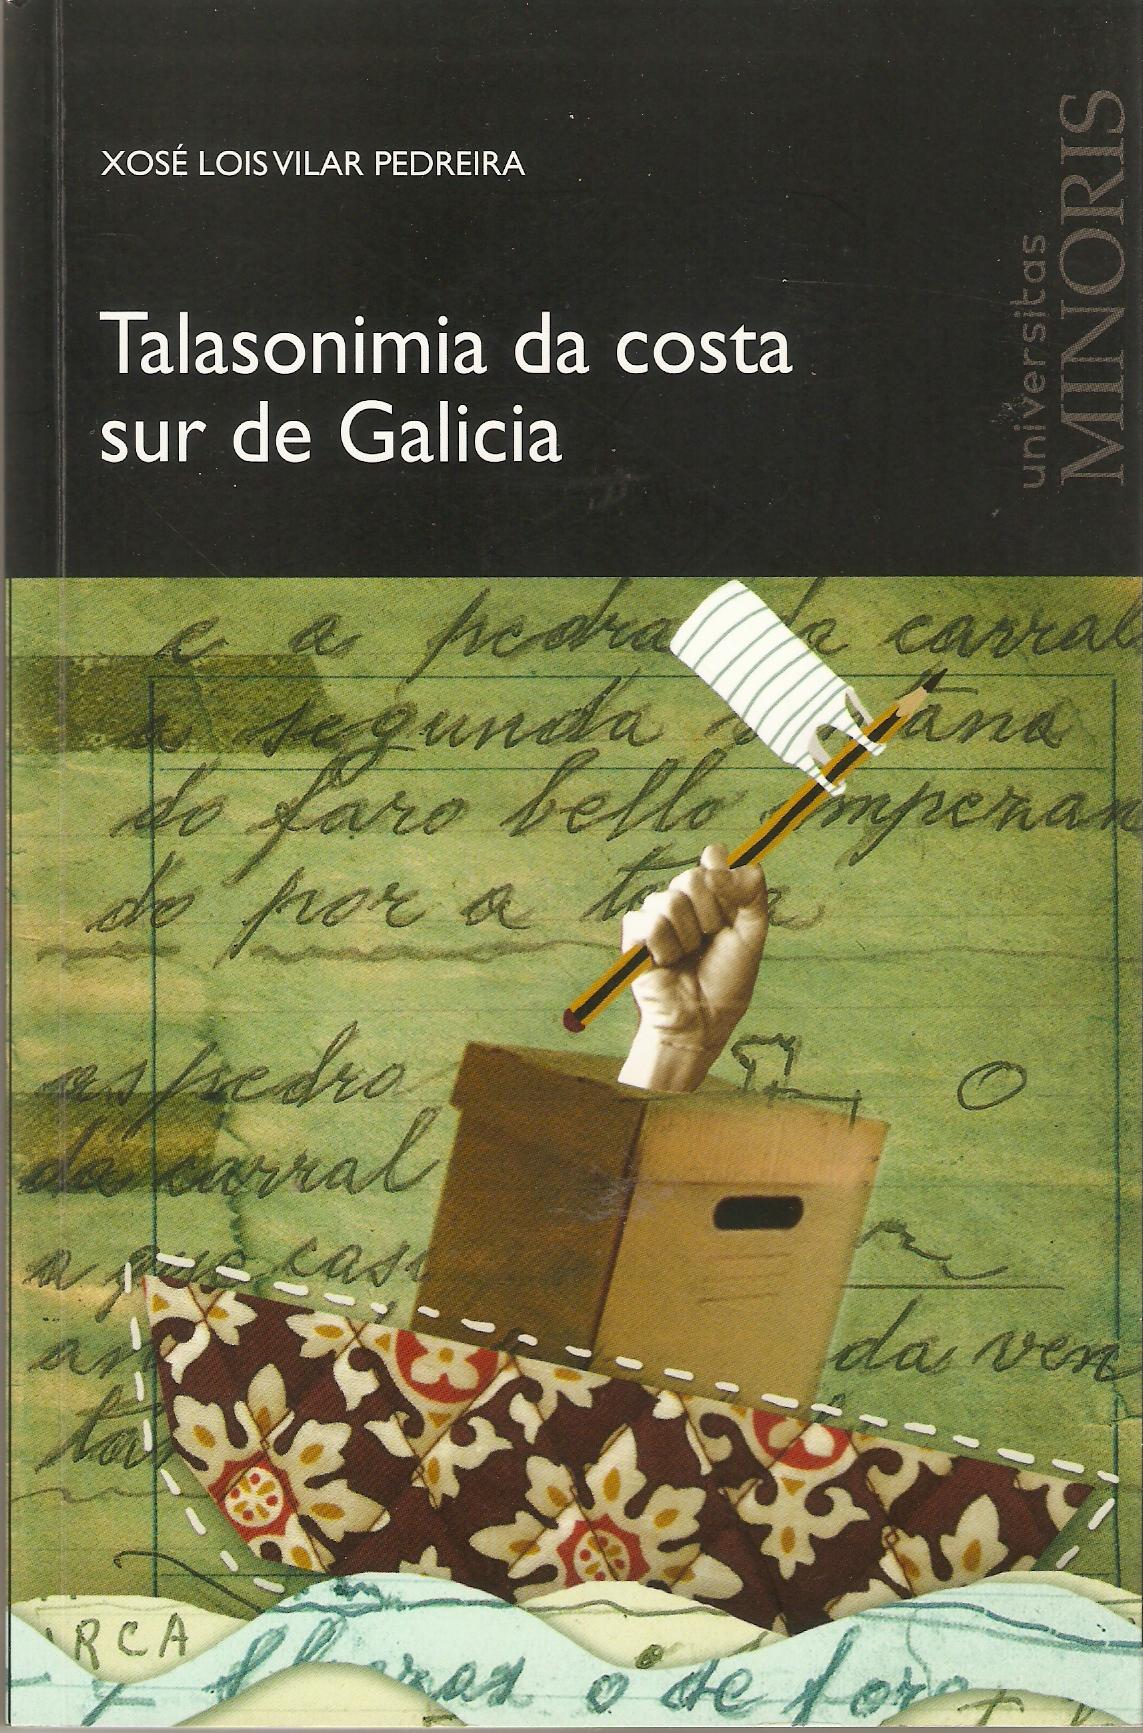 Talasonimia da costa sur de Galicia